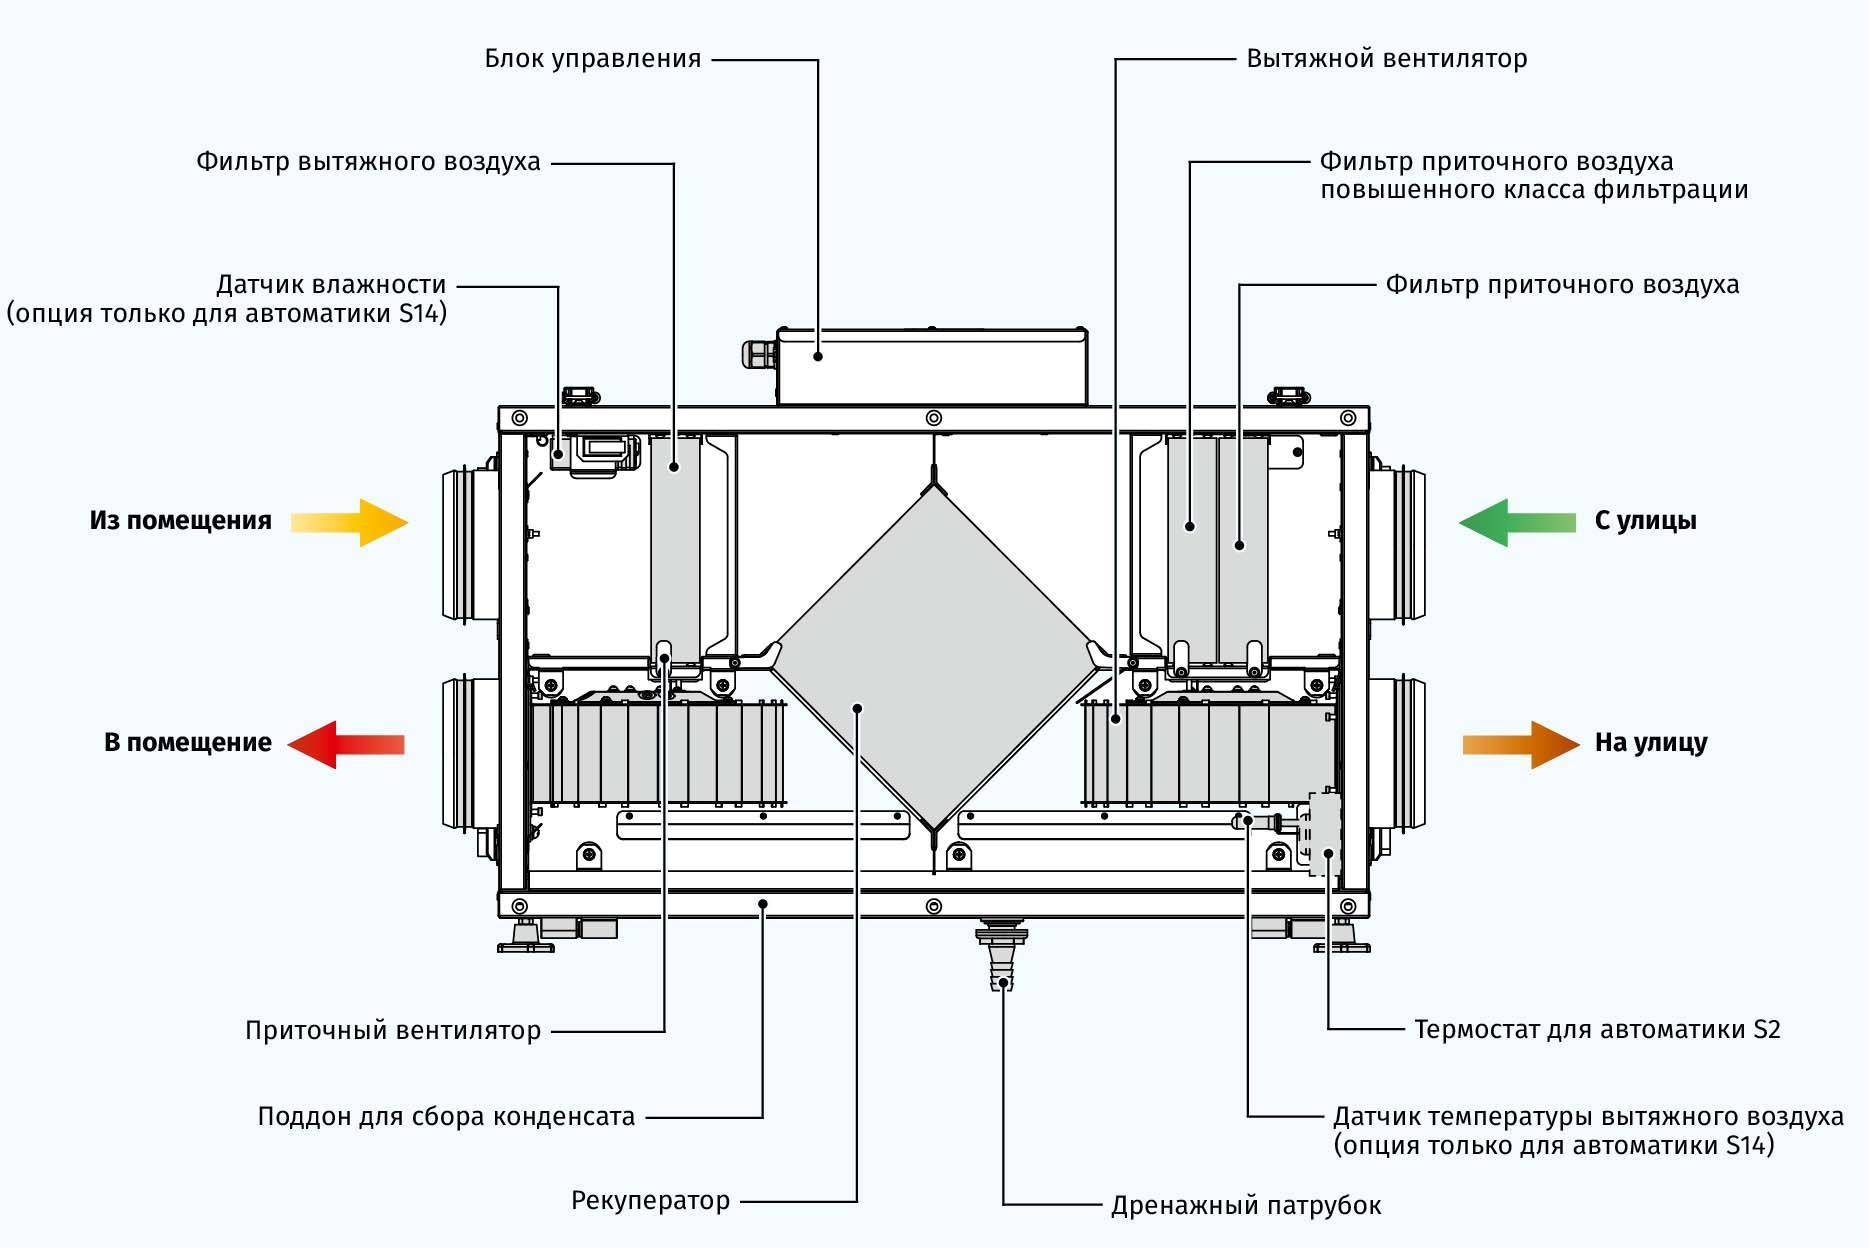 Рекуперация тепла в системах вентиляции: применение, уровень влажности, конструкция и инструкции по их работе